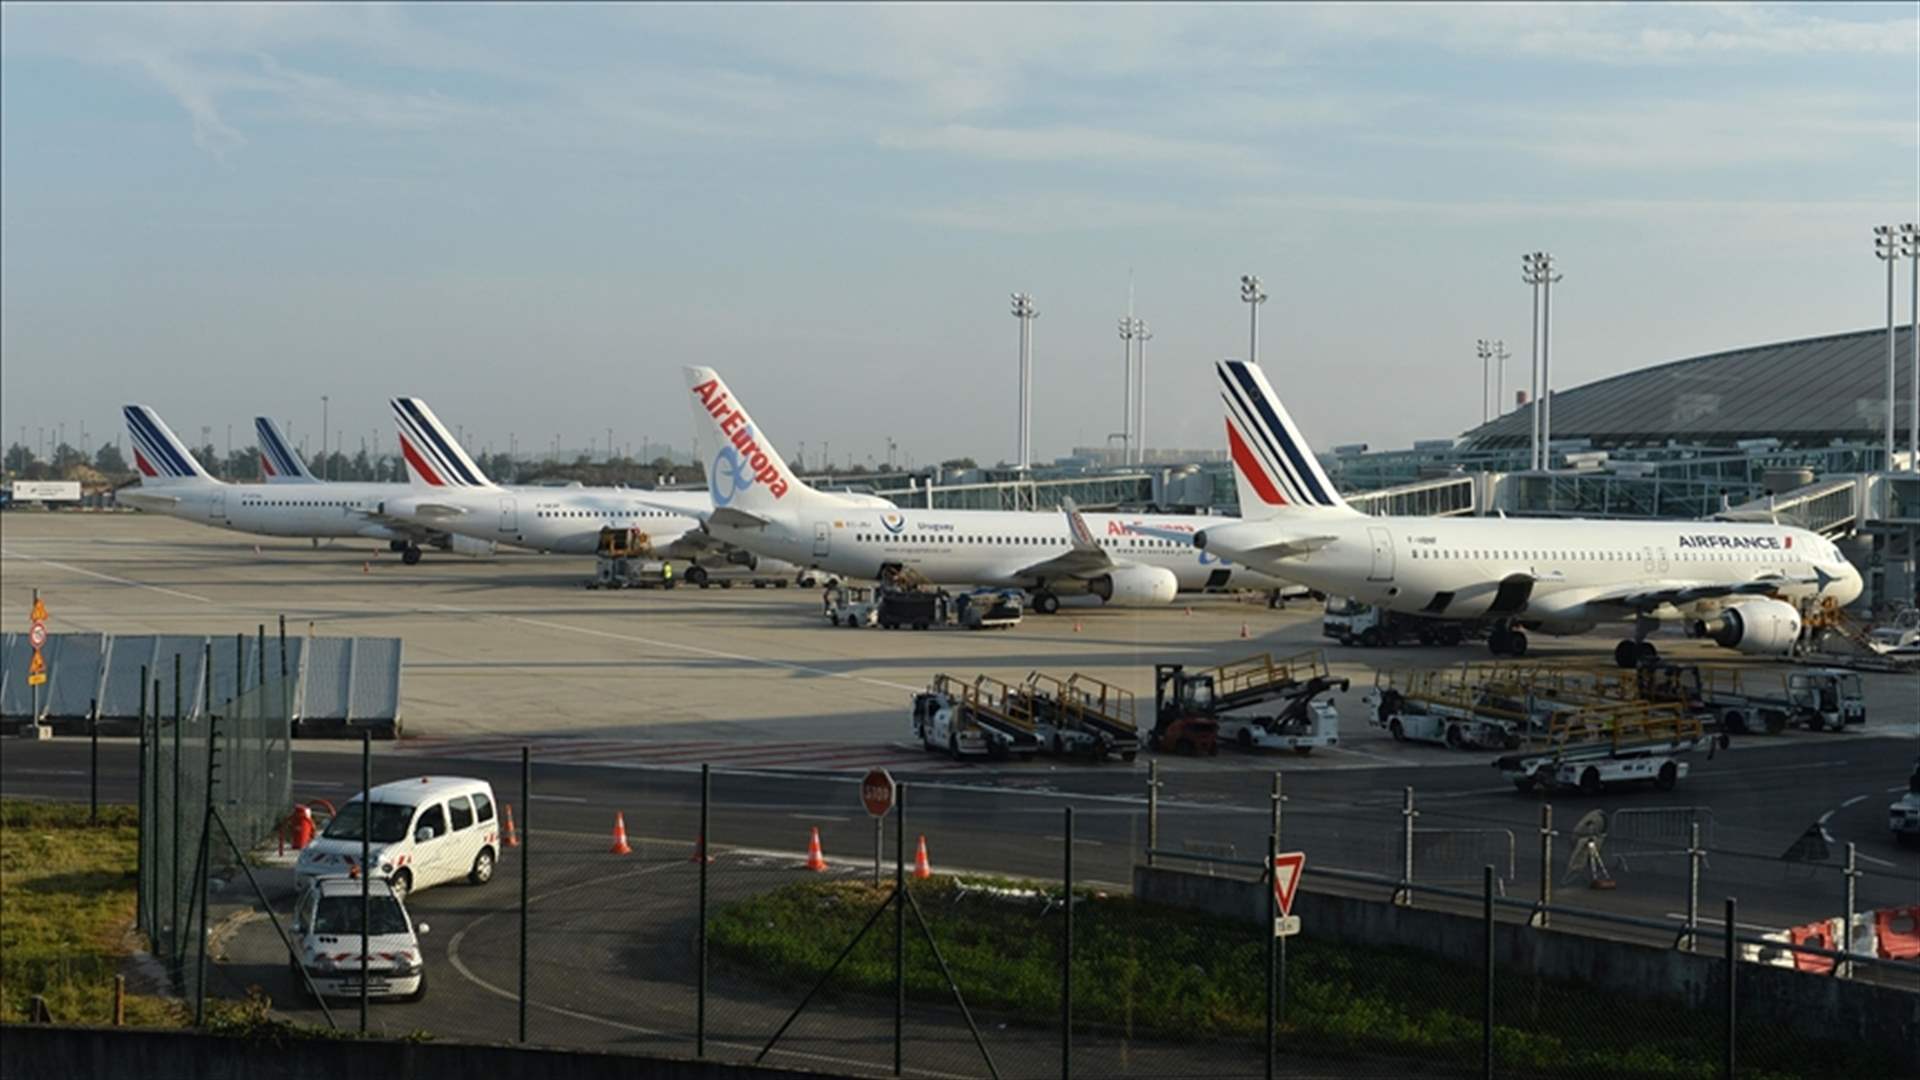 إلغاء جزء من رحلات مطارَي باريس أورلي ومرسيليا الإثنين بسبب إضراب